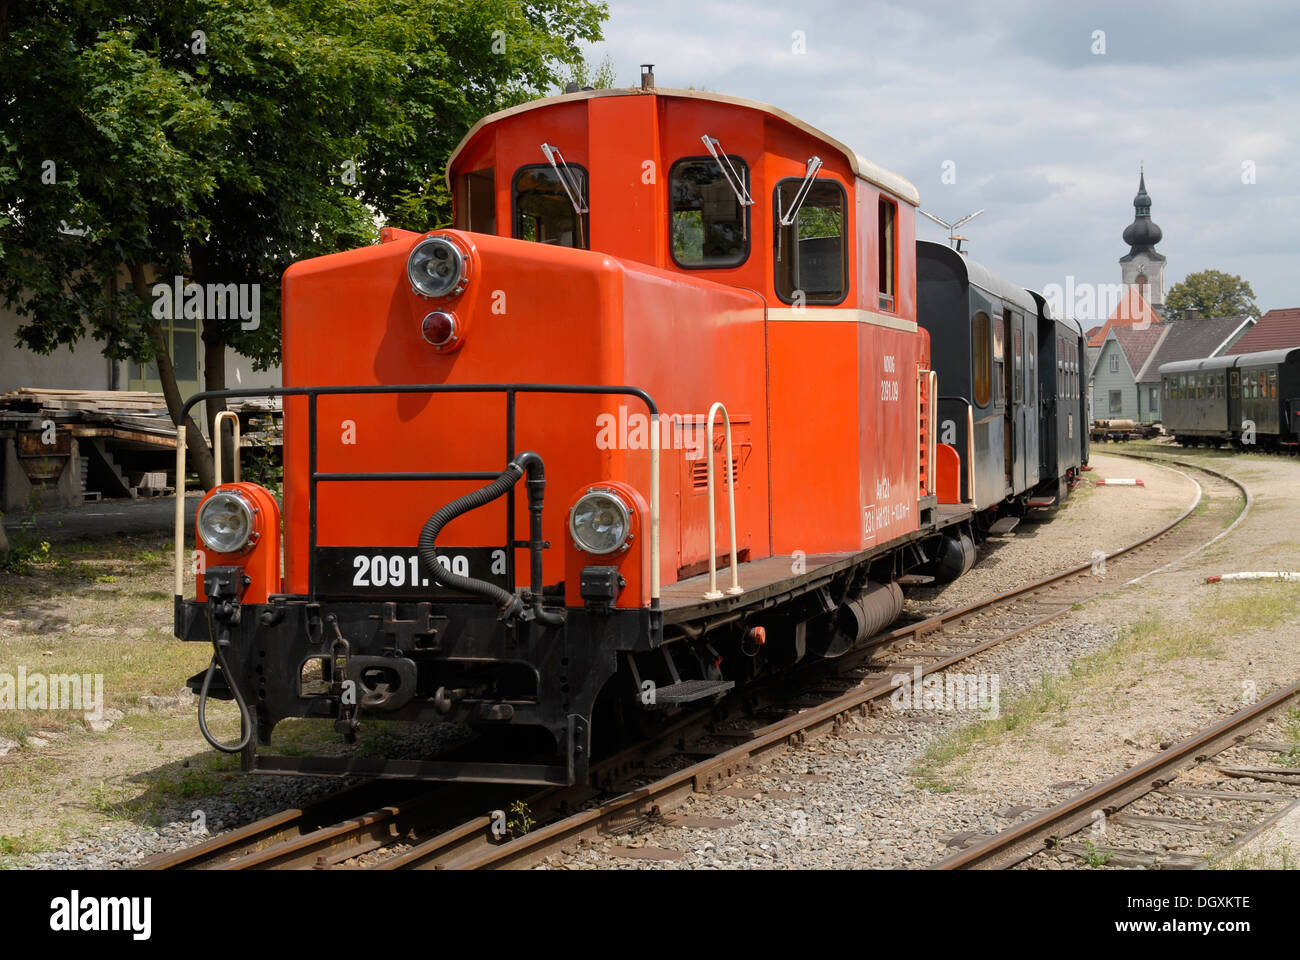 Narrow gauge Railway, Heidenreichstein, Austria Stock Photo